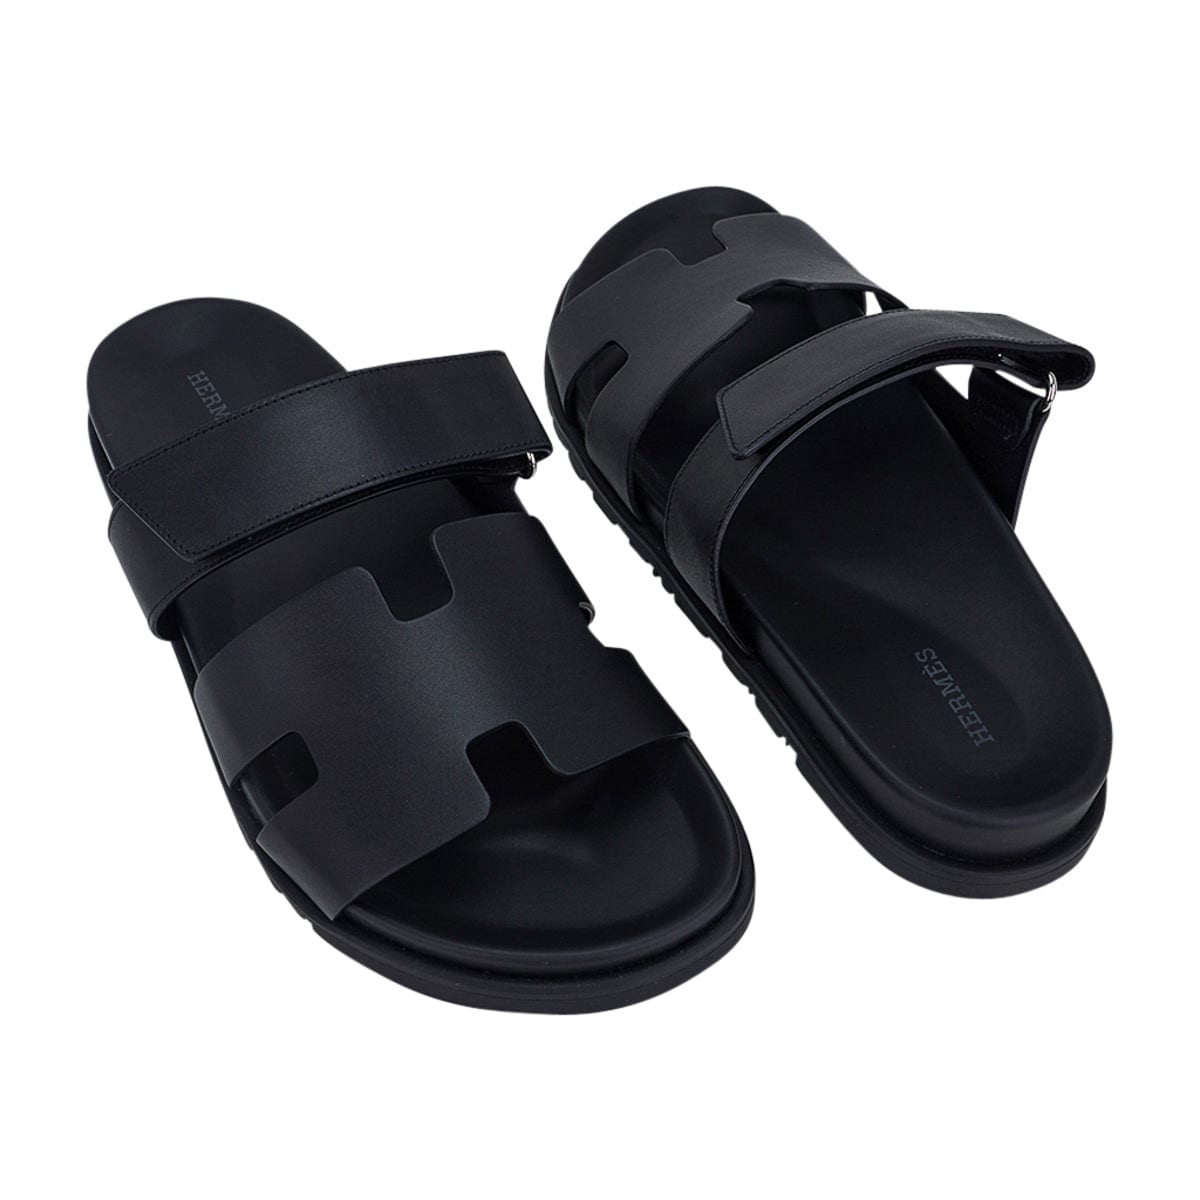 Hermès - Chypre Sandal - Men's Shoes